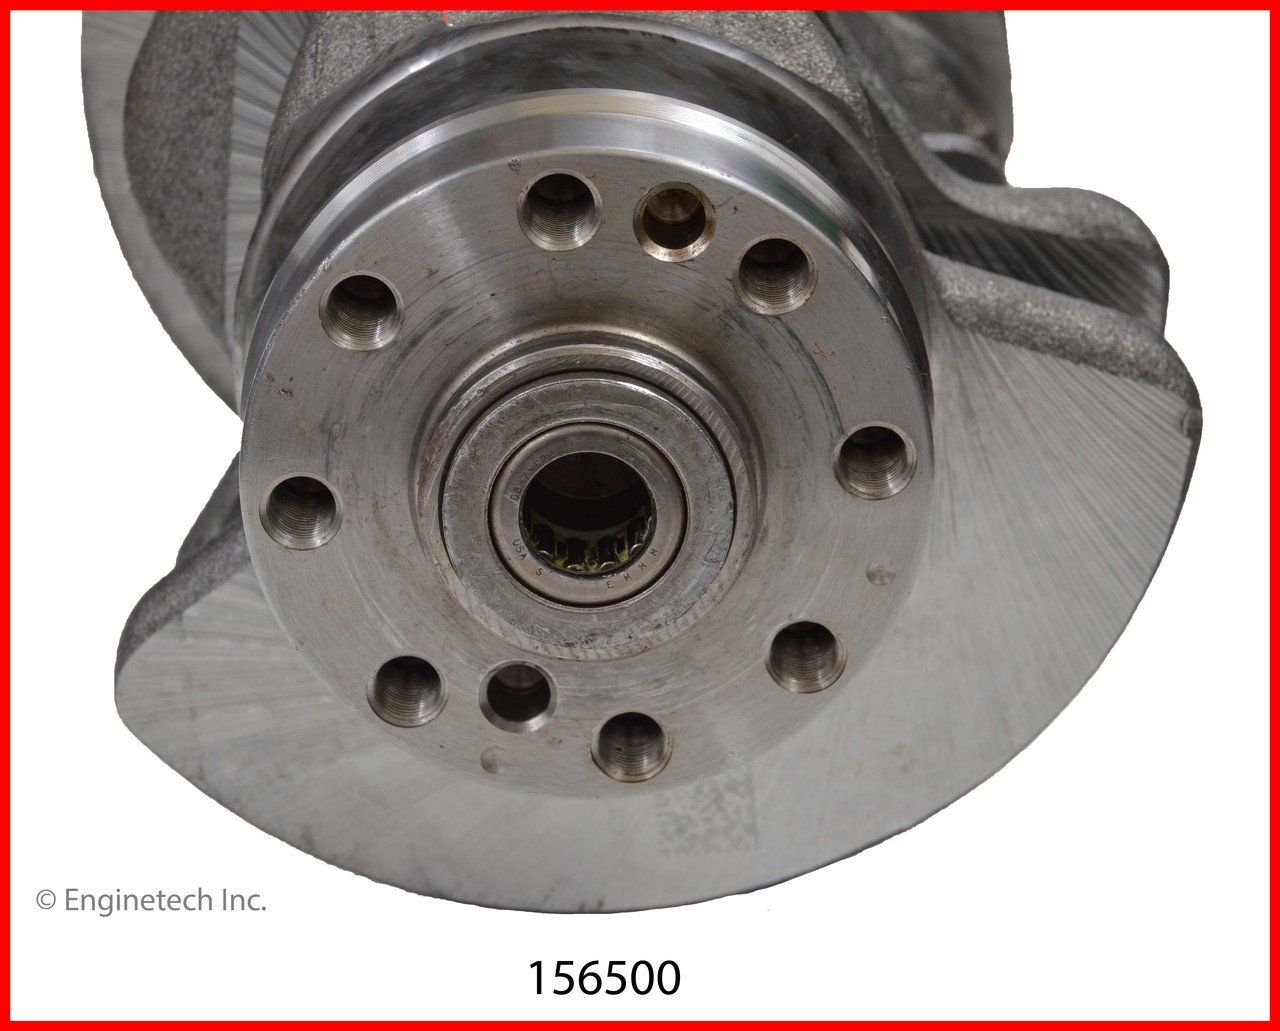 Crankshaft Kit - 2013 Ford Edge 3.5L (156500.D34)